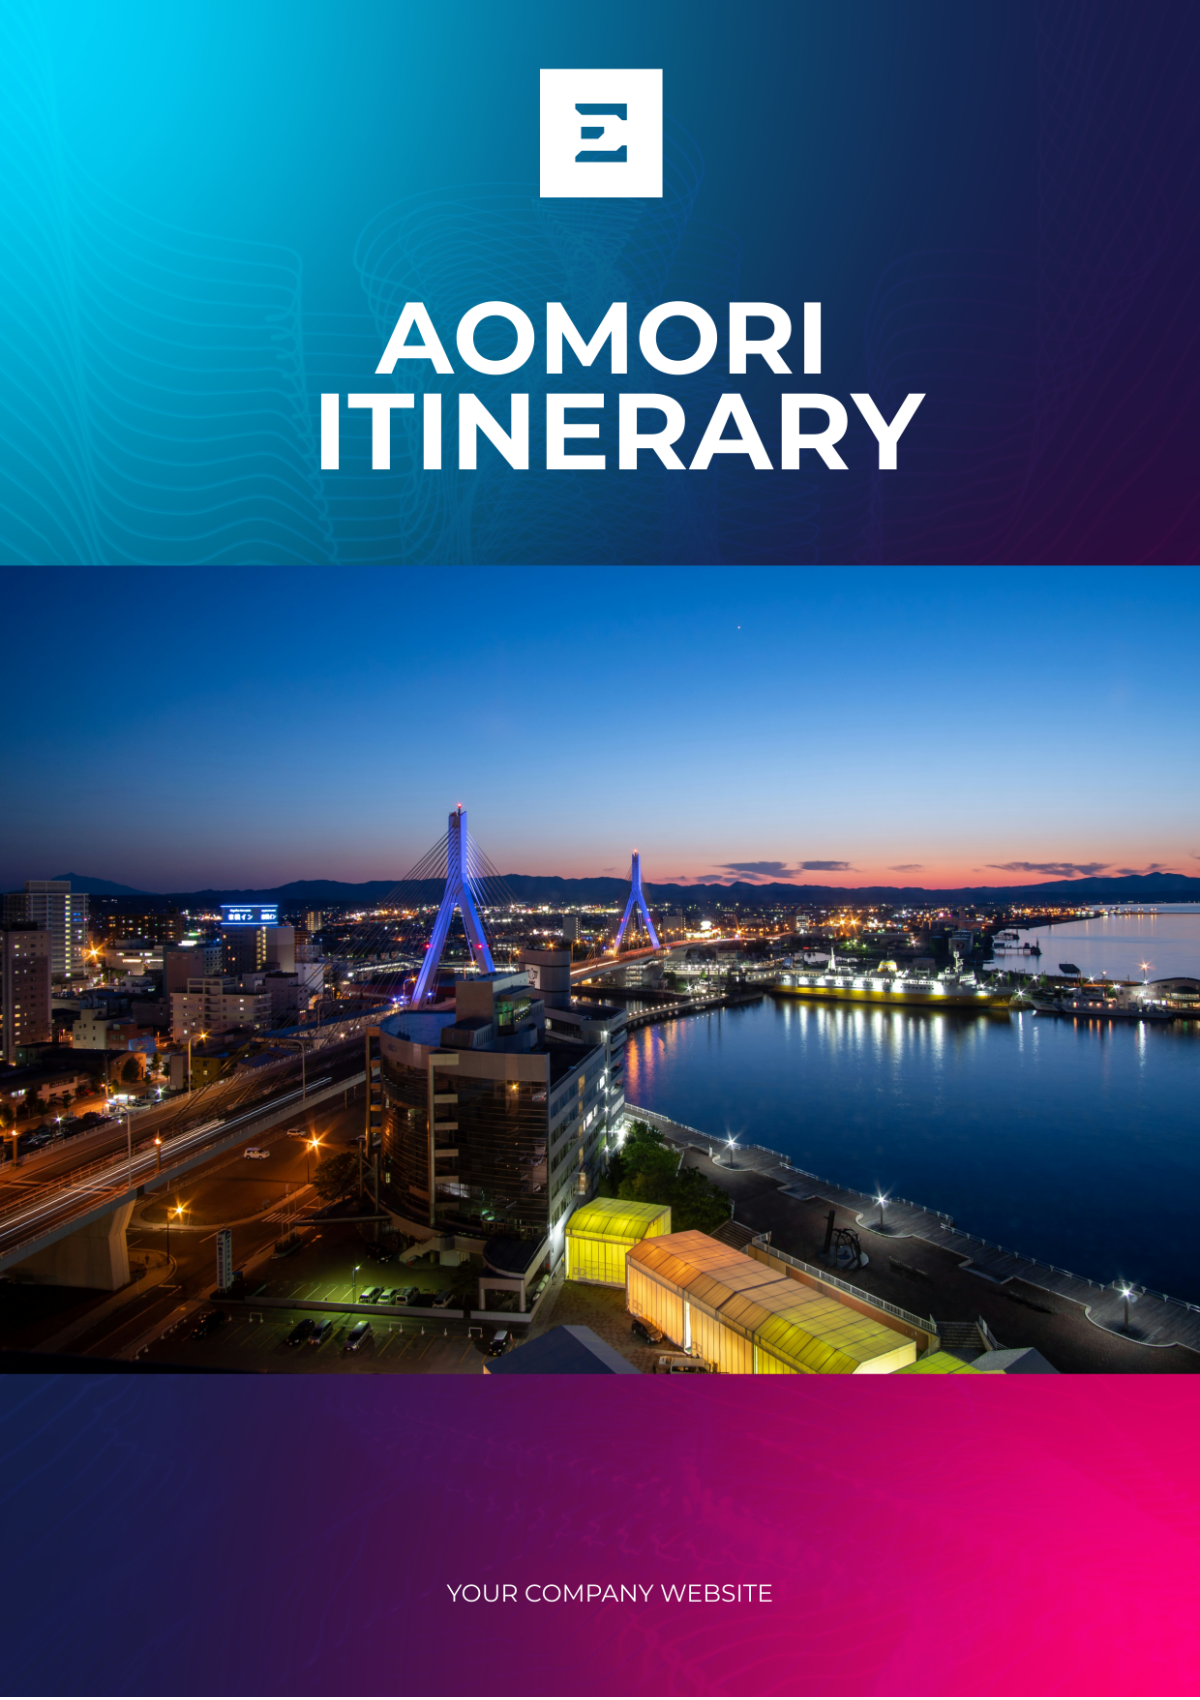 Aomori Itinerary Template